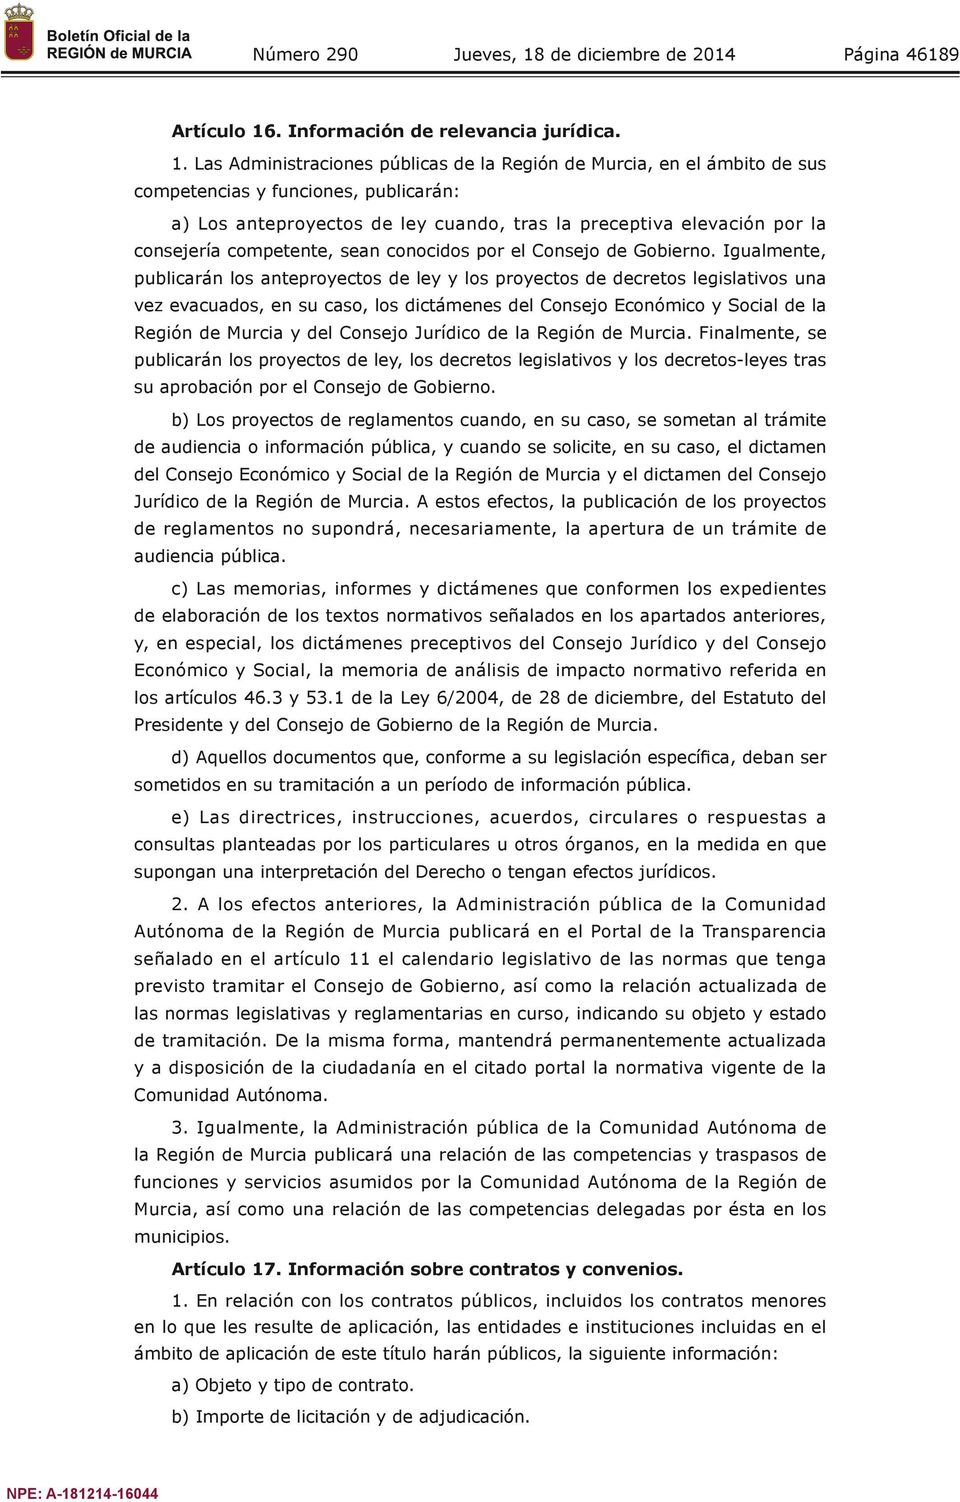 Las Administraciones públicas de la Región de Murcia, en el ámbito de sus competencias y funciones, publicarán: a) Los anteproyectos de ley cuando, tras la preceptiva elevación por la consejería